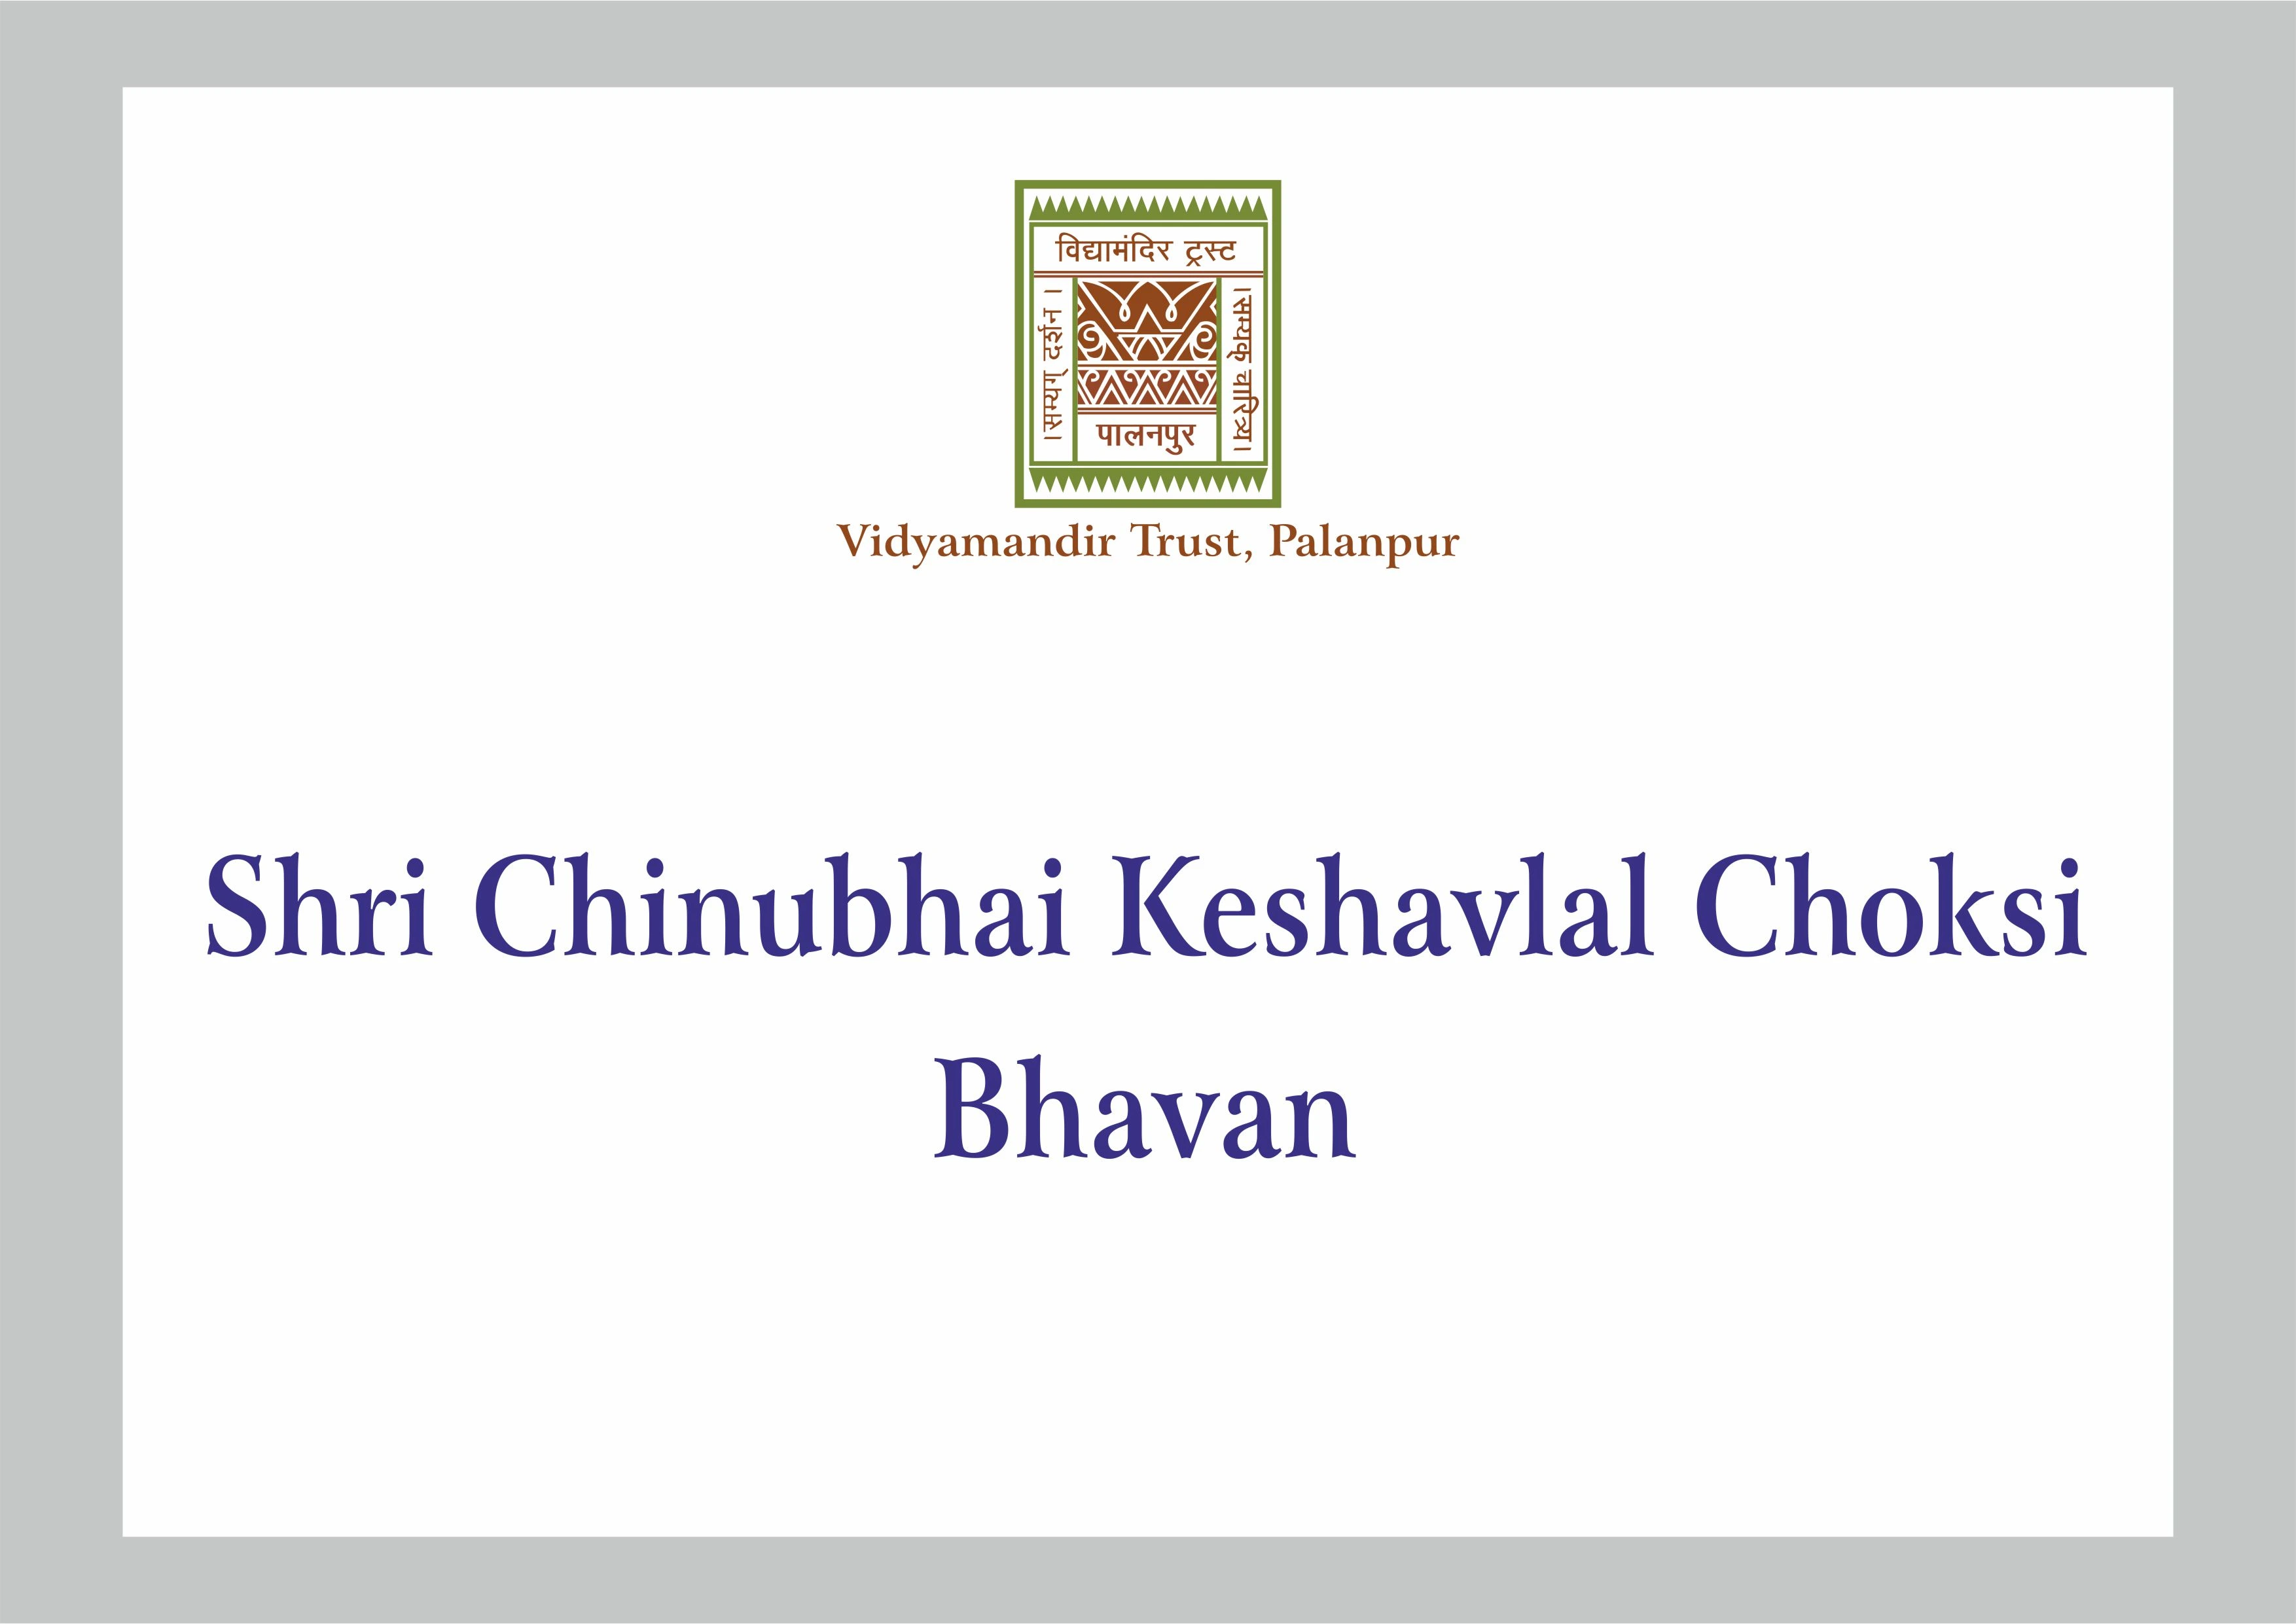 Shri Chinubhai Keshavlal Choksi Bhavan - Building Pboto